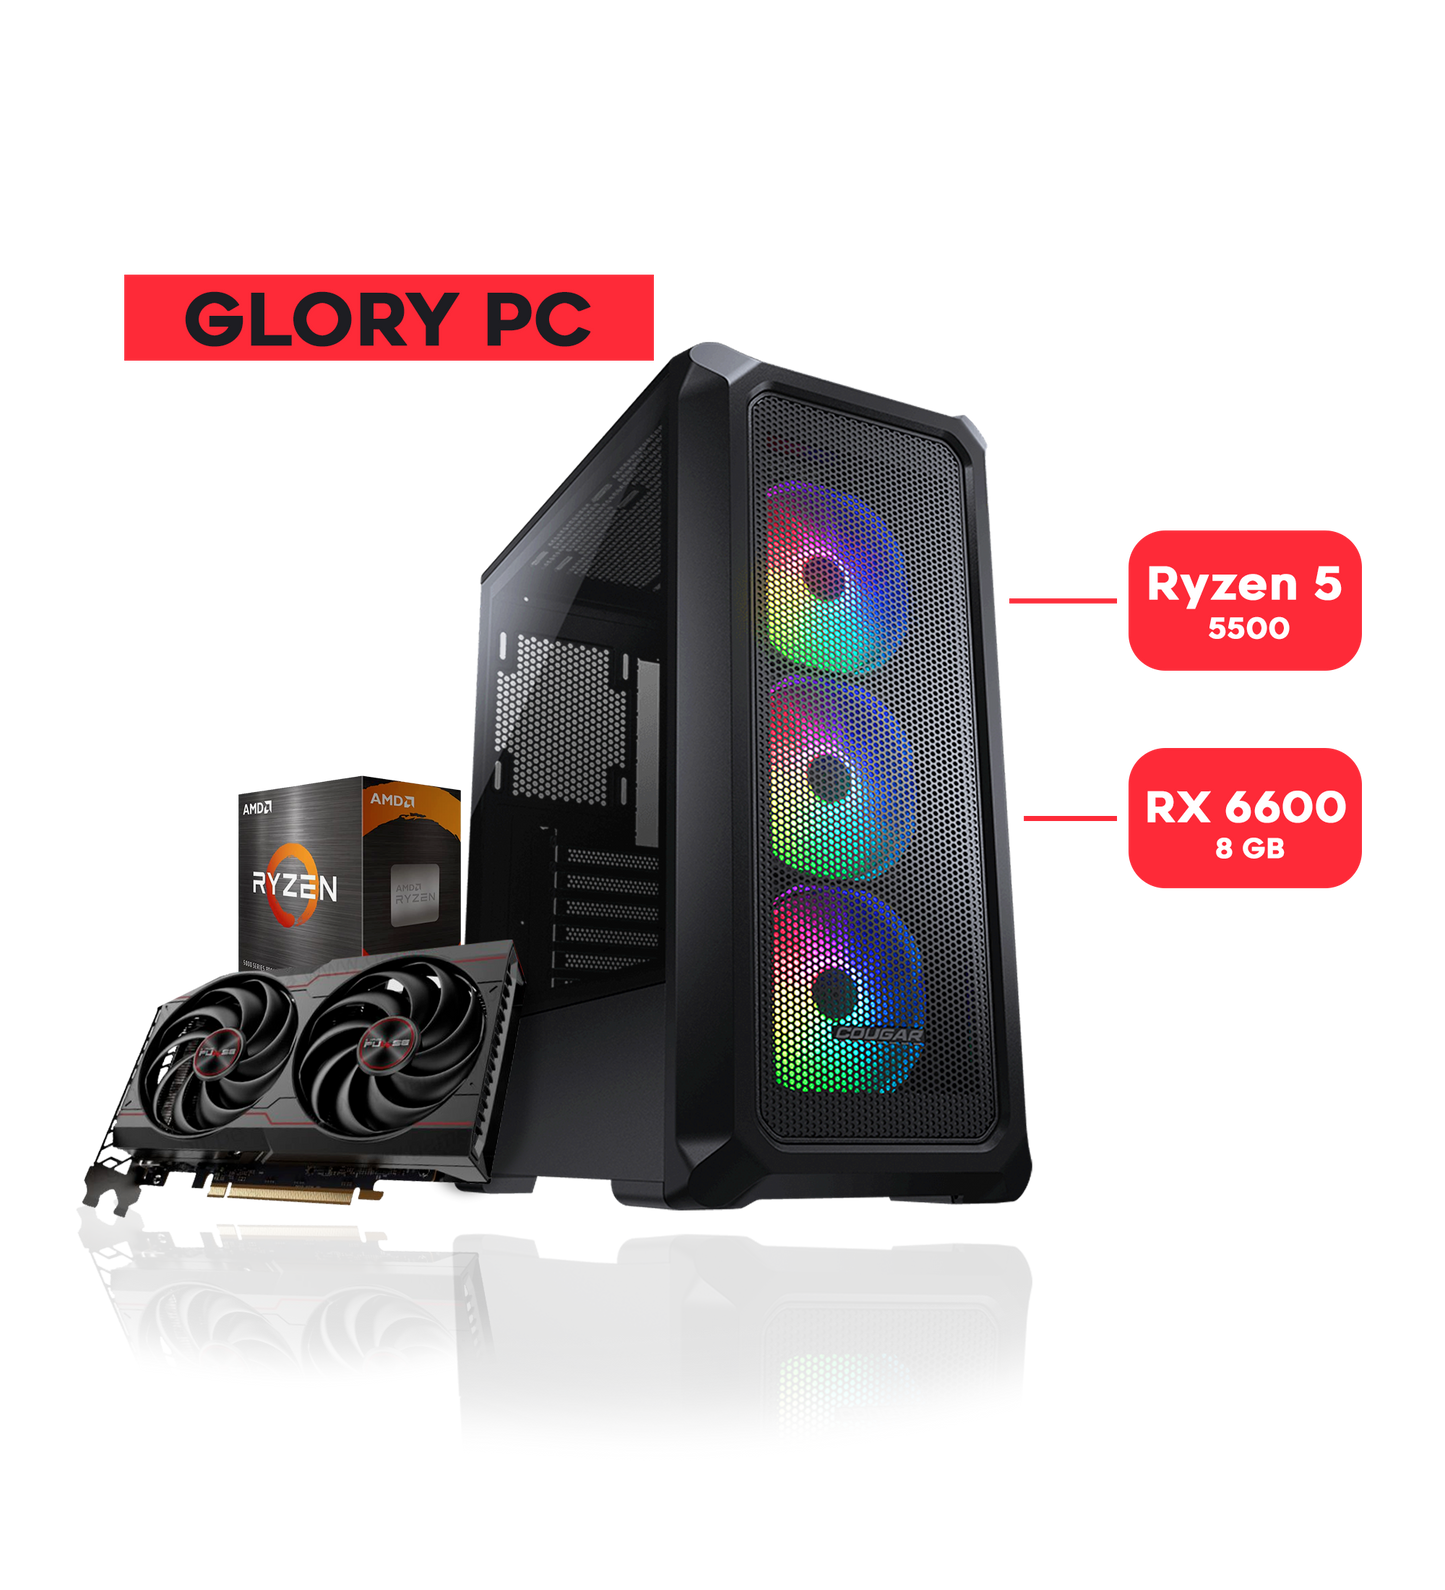 GLORY PC / RYZEN 5 5500 / RX 6600 /